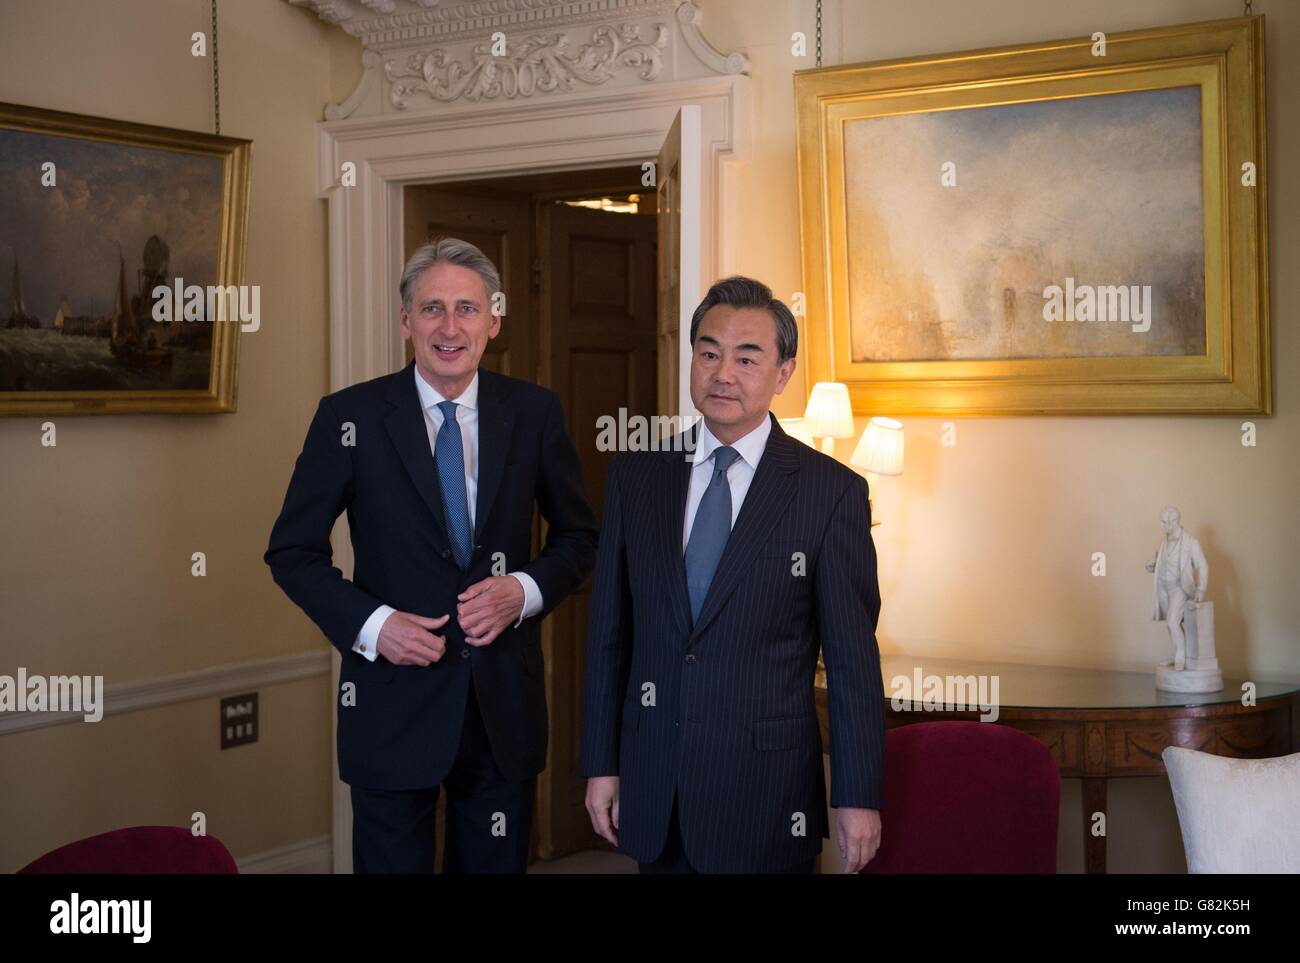 El Secretario de Asuntos Exteriores Philip Hammond (izquierda) se reúne con el Ministro de Asuntos Exteriores de China Wang Yi en el 10 Downing Street en Londres. Foto de stock